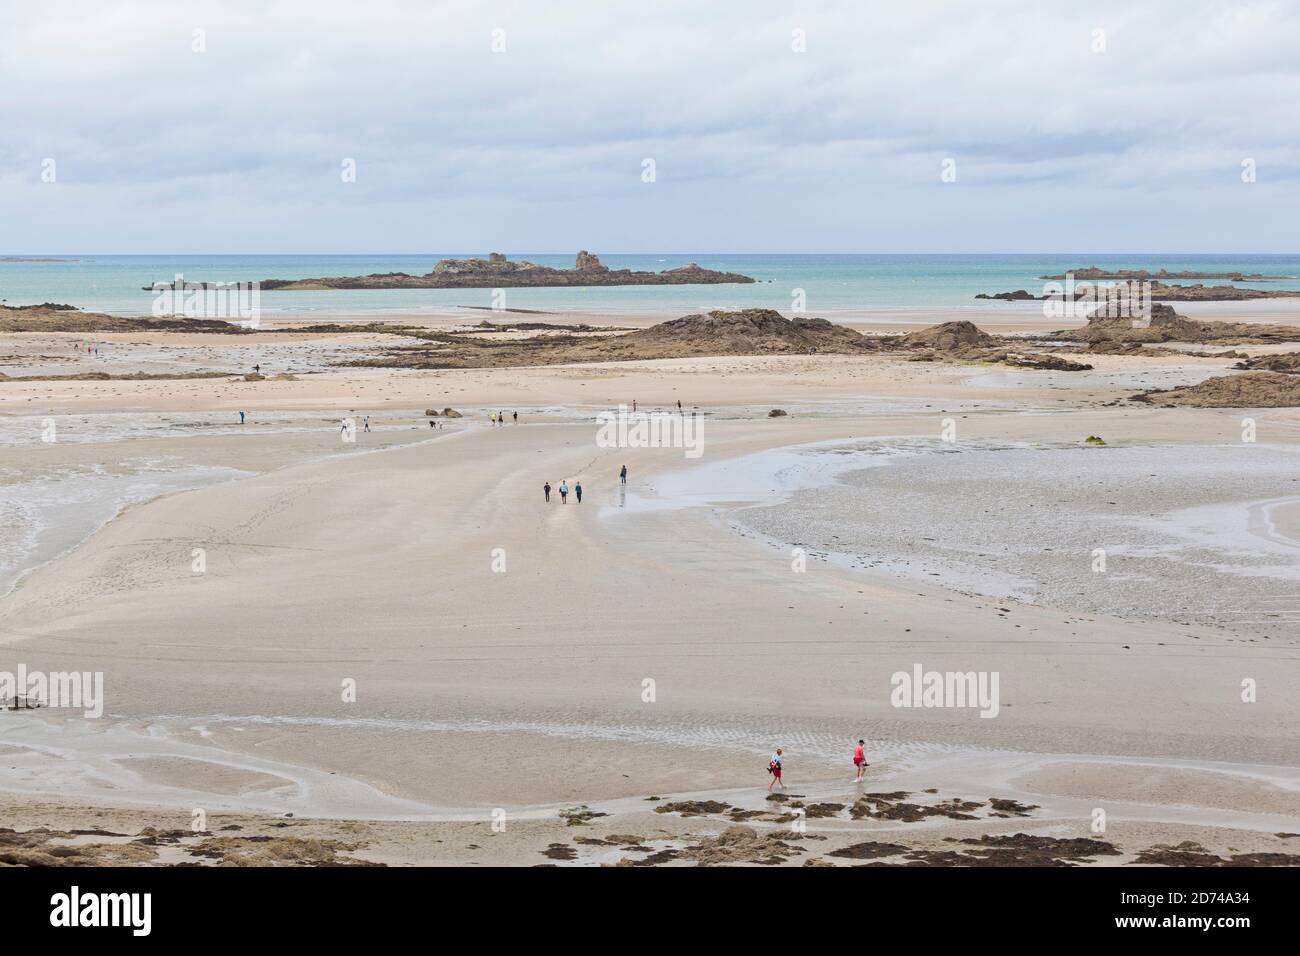 Felsen und Strand formen die Gezeiteninsel Ebihens bei Saint Malo in der Bretagne, Frankreich. Archipel des Ébihens Stock Photo